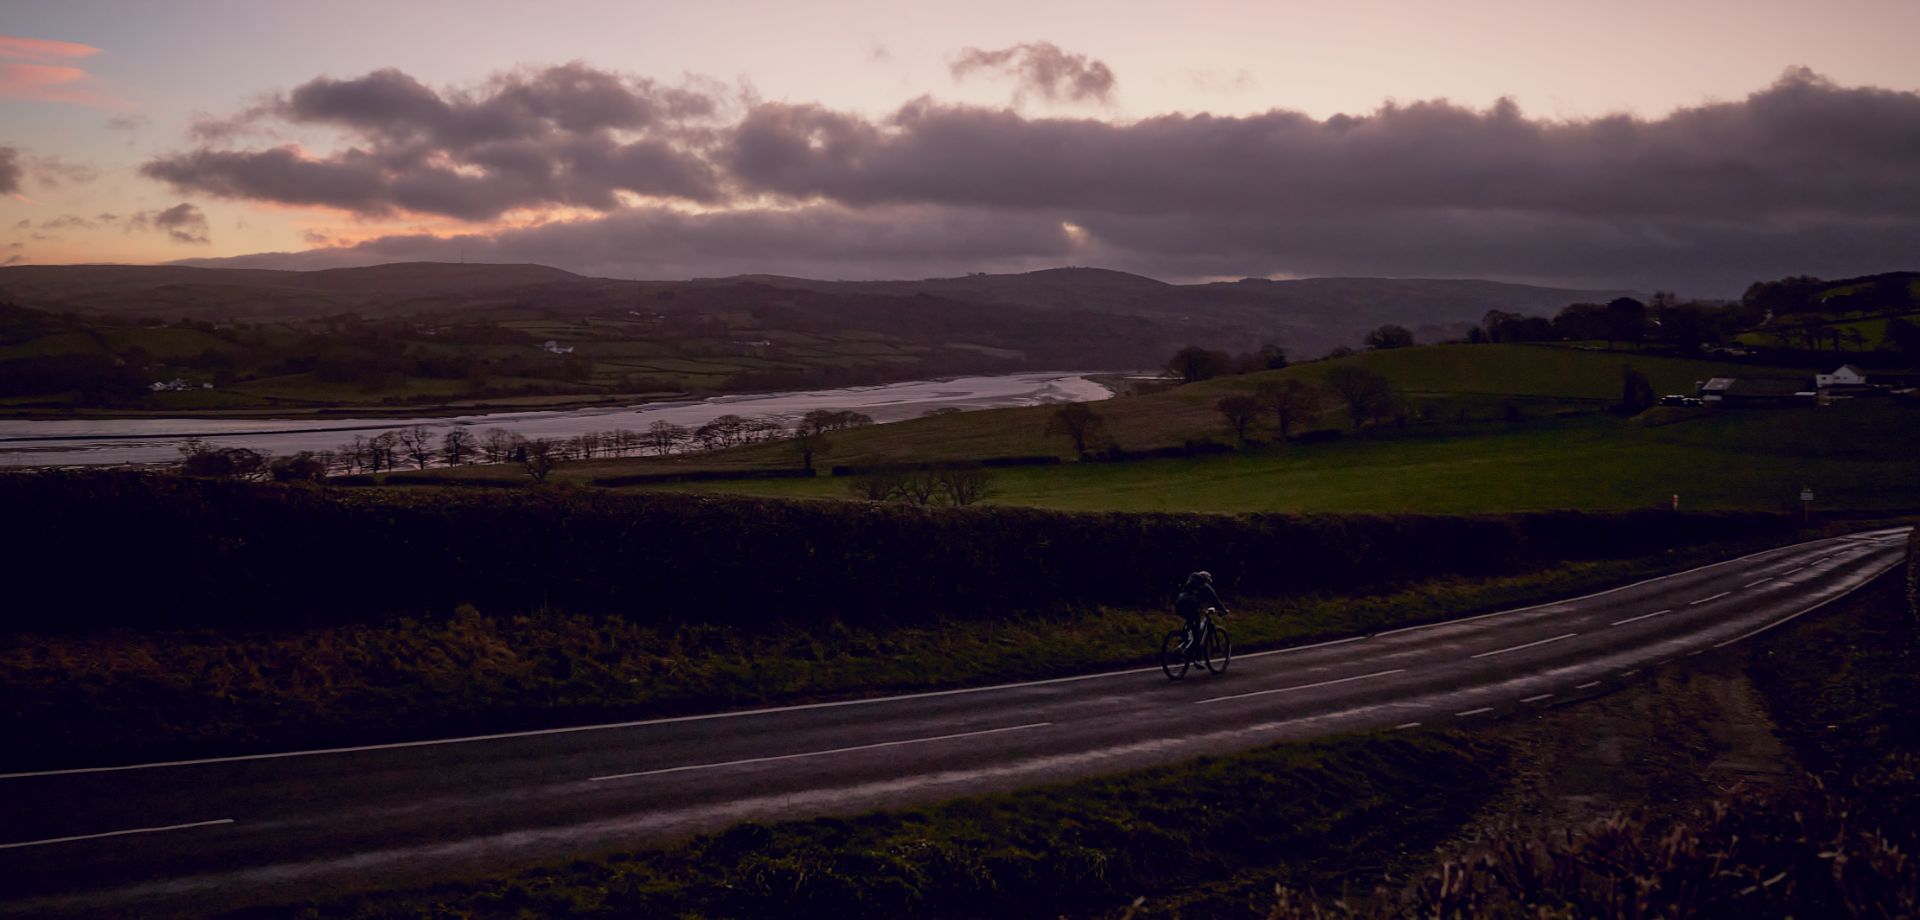 Alla conquista della più estrema avventura gallese in mountain bike